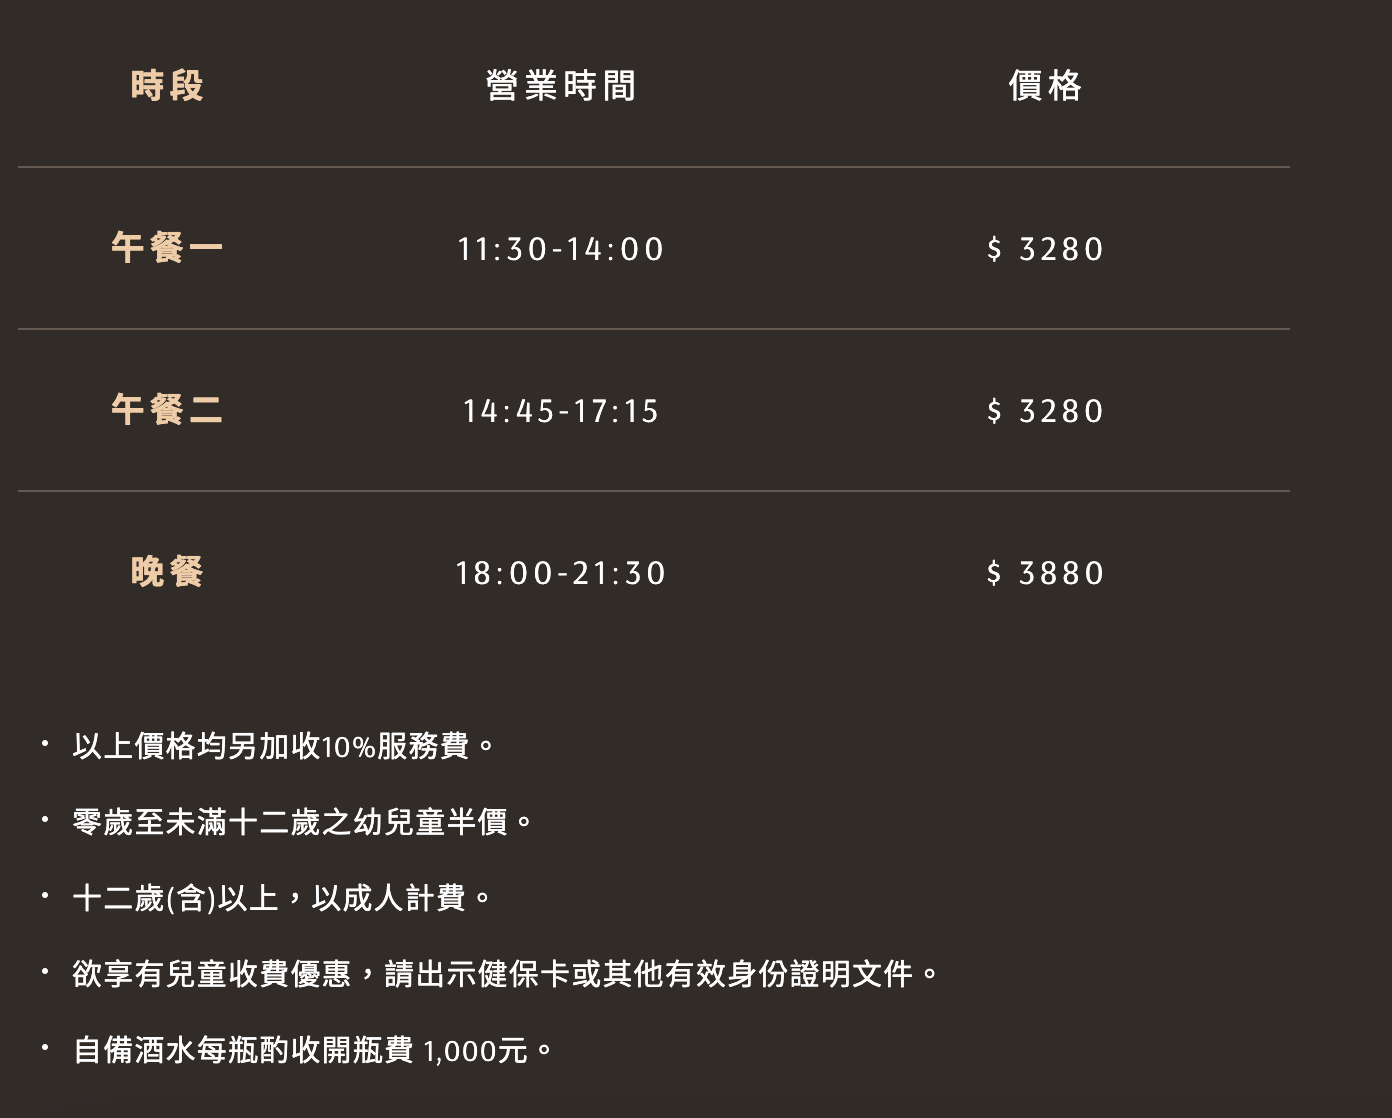 台北 101「饗 A Joy」訂位時間、用餐價錢一覽表